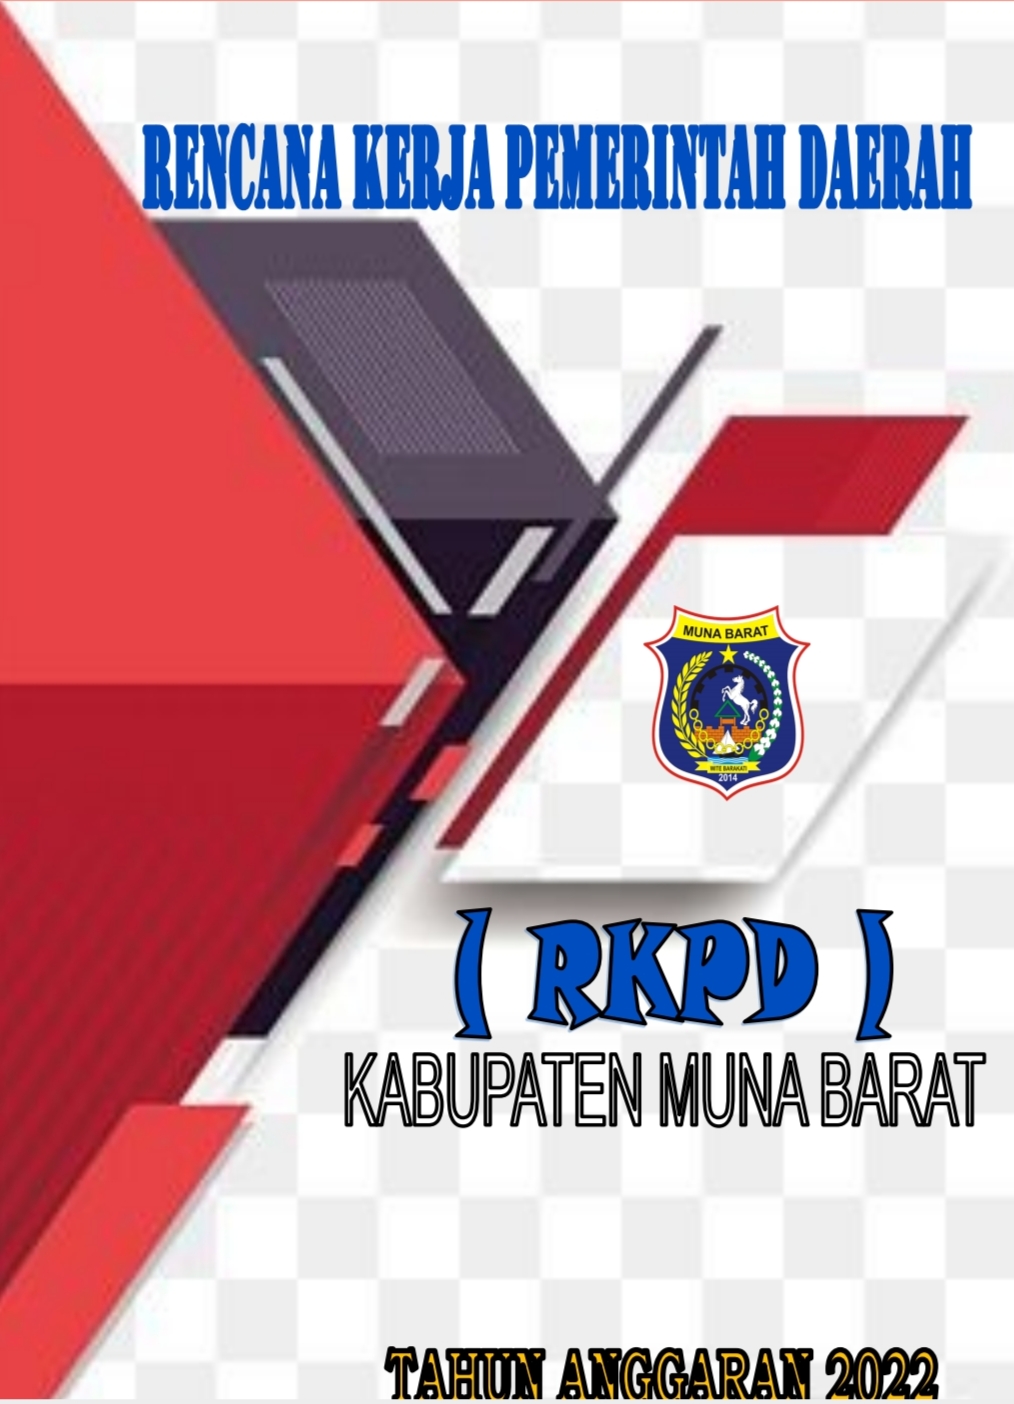 RKPD 2022